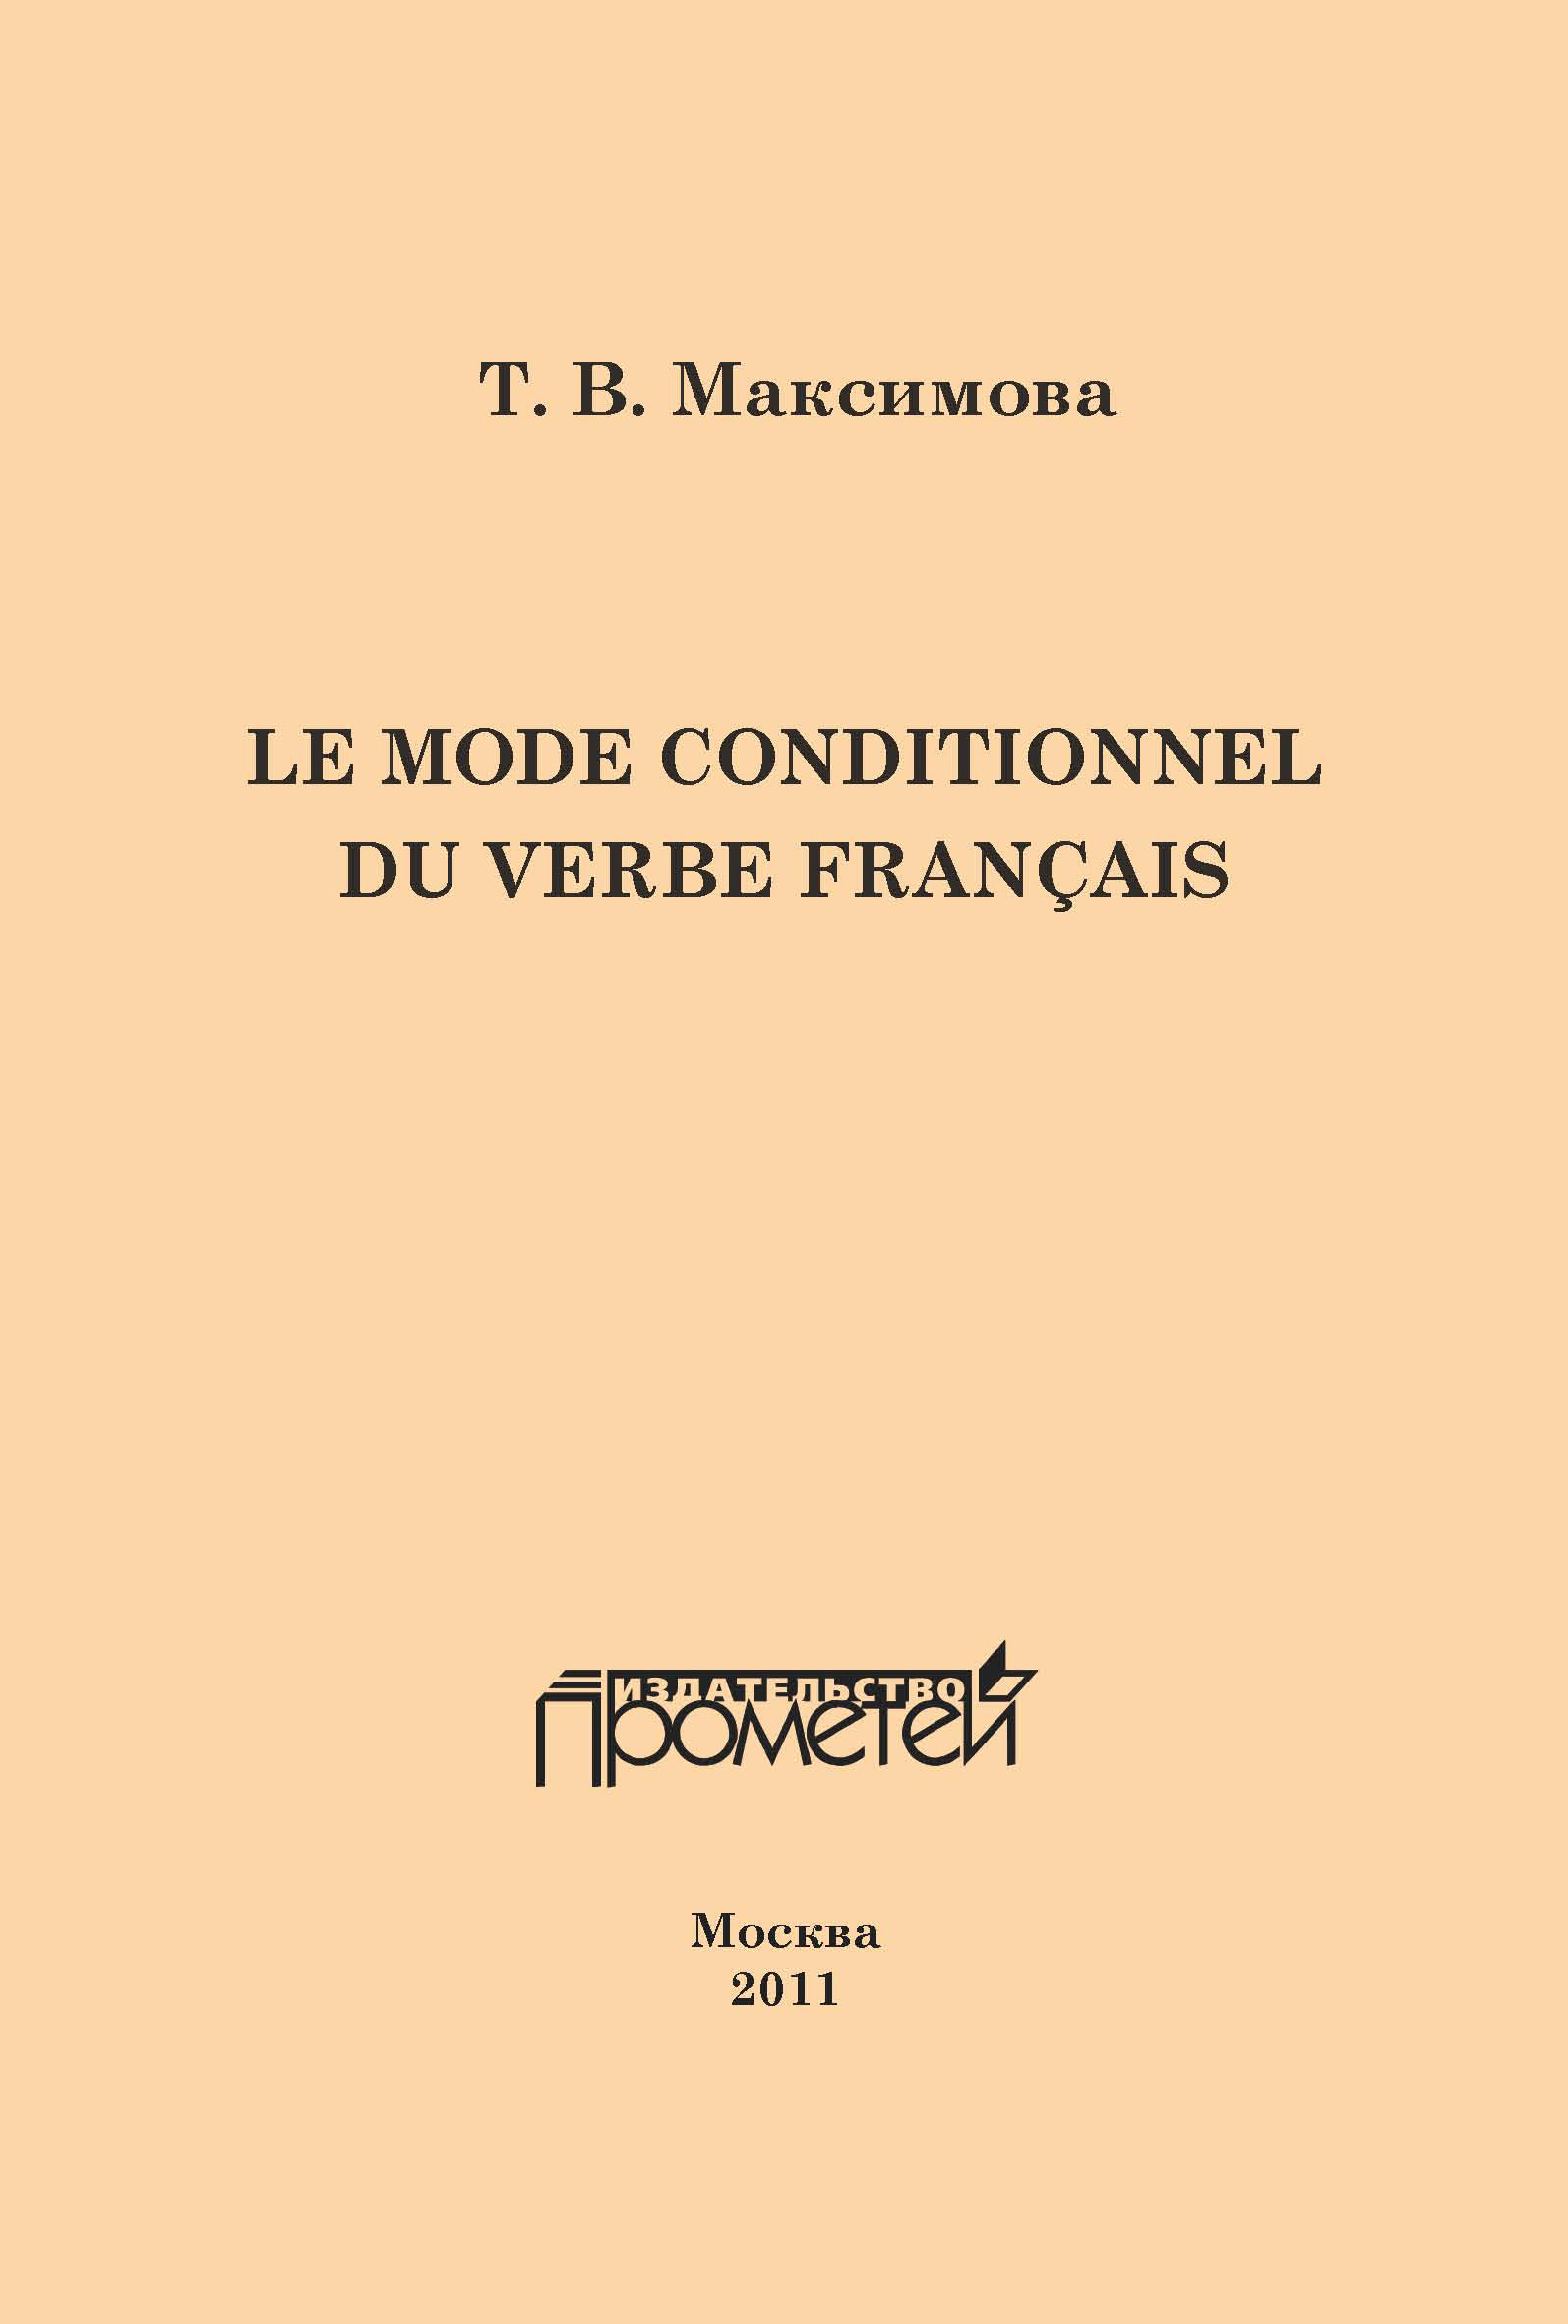 Le mode conditionnel du verbe français. Условное наклонение французского глагола